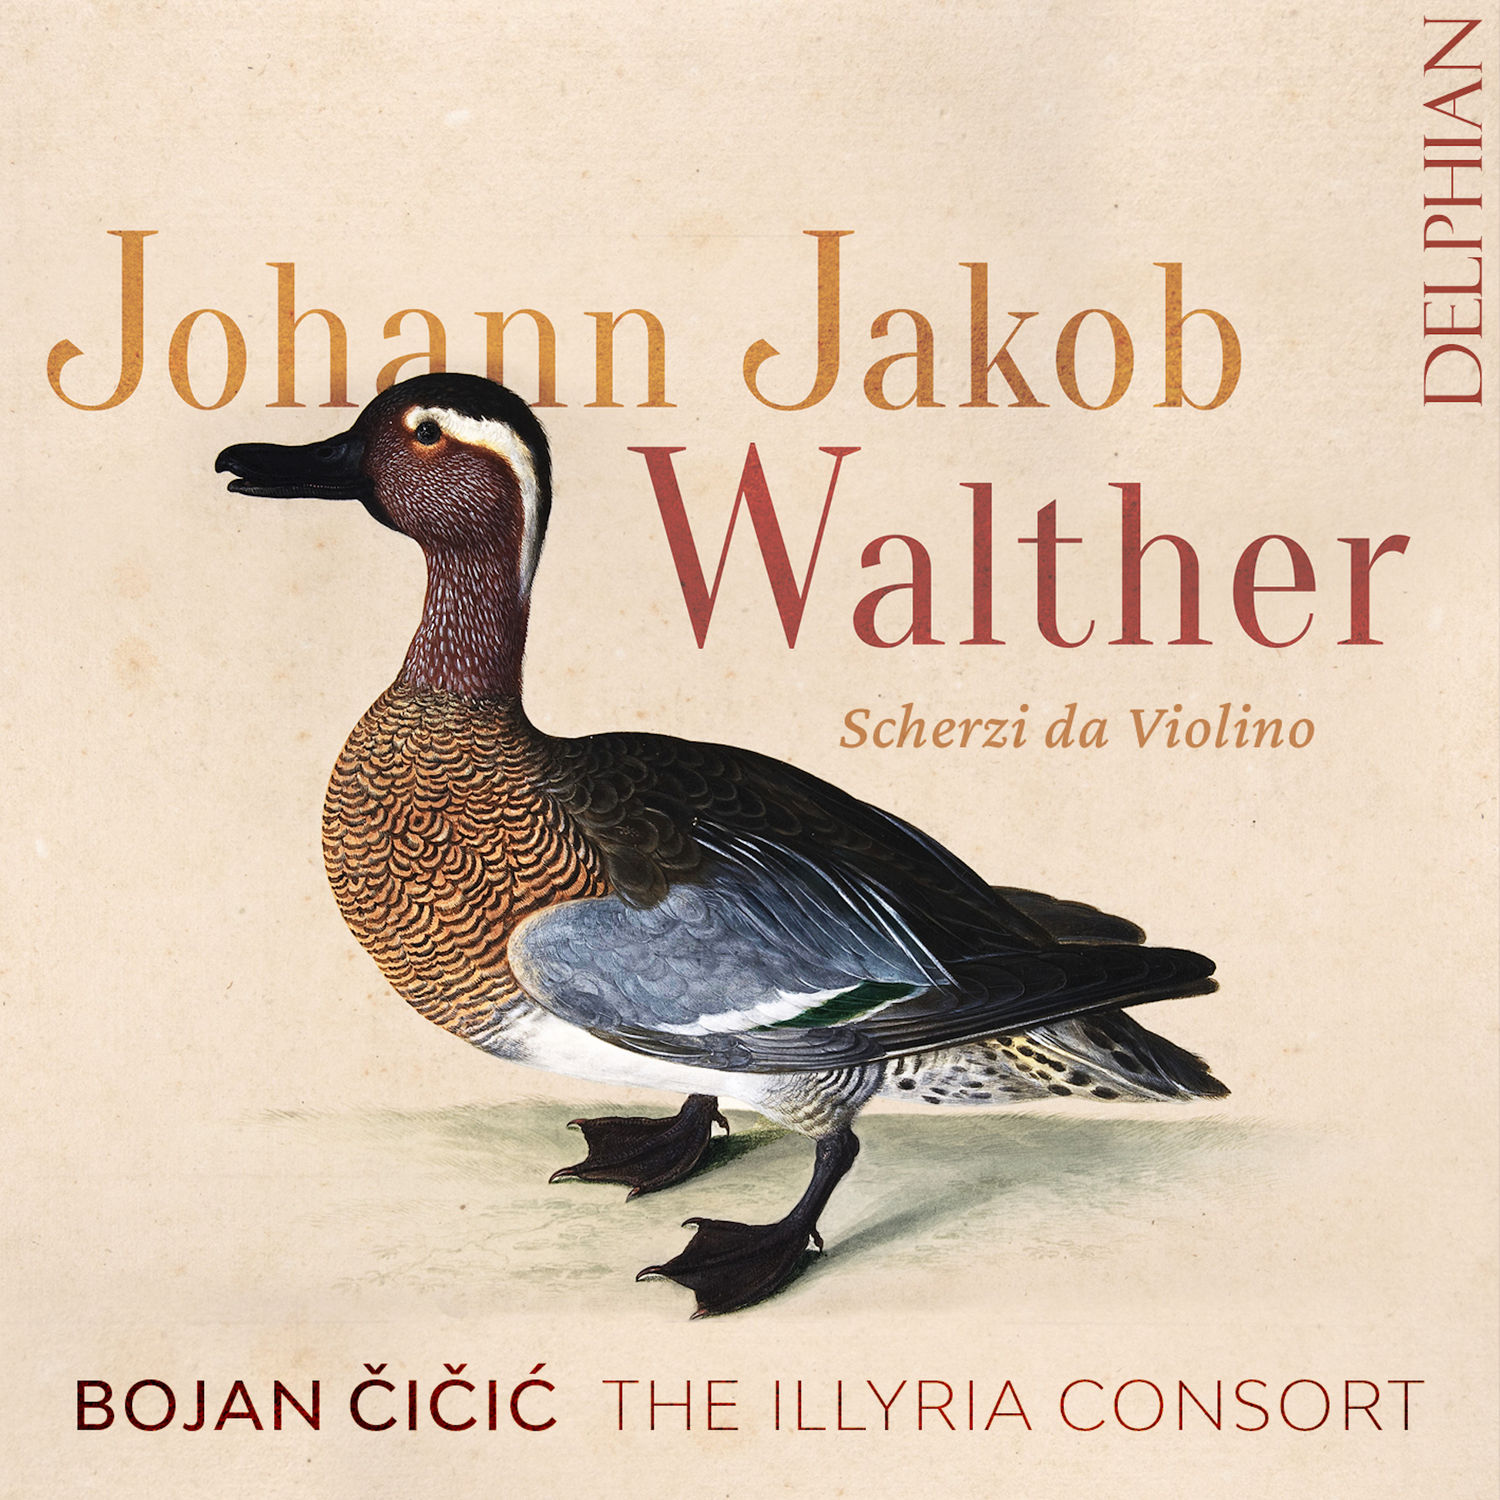 Walther, Johann Jacob - Scherzi da violino solo, 1676 - Bojan Cicic